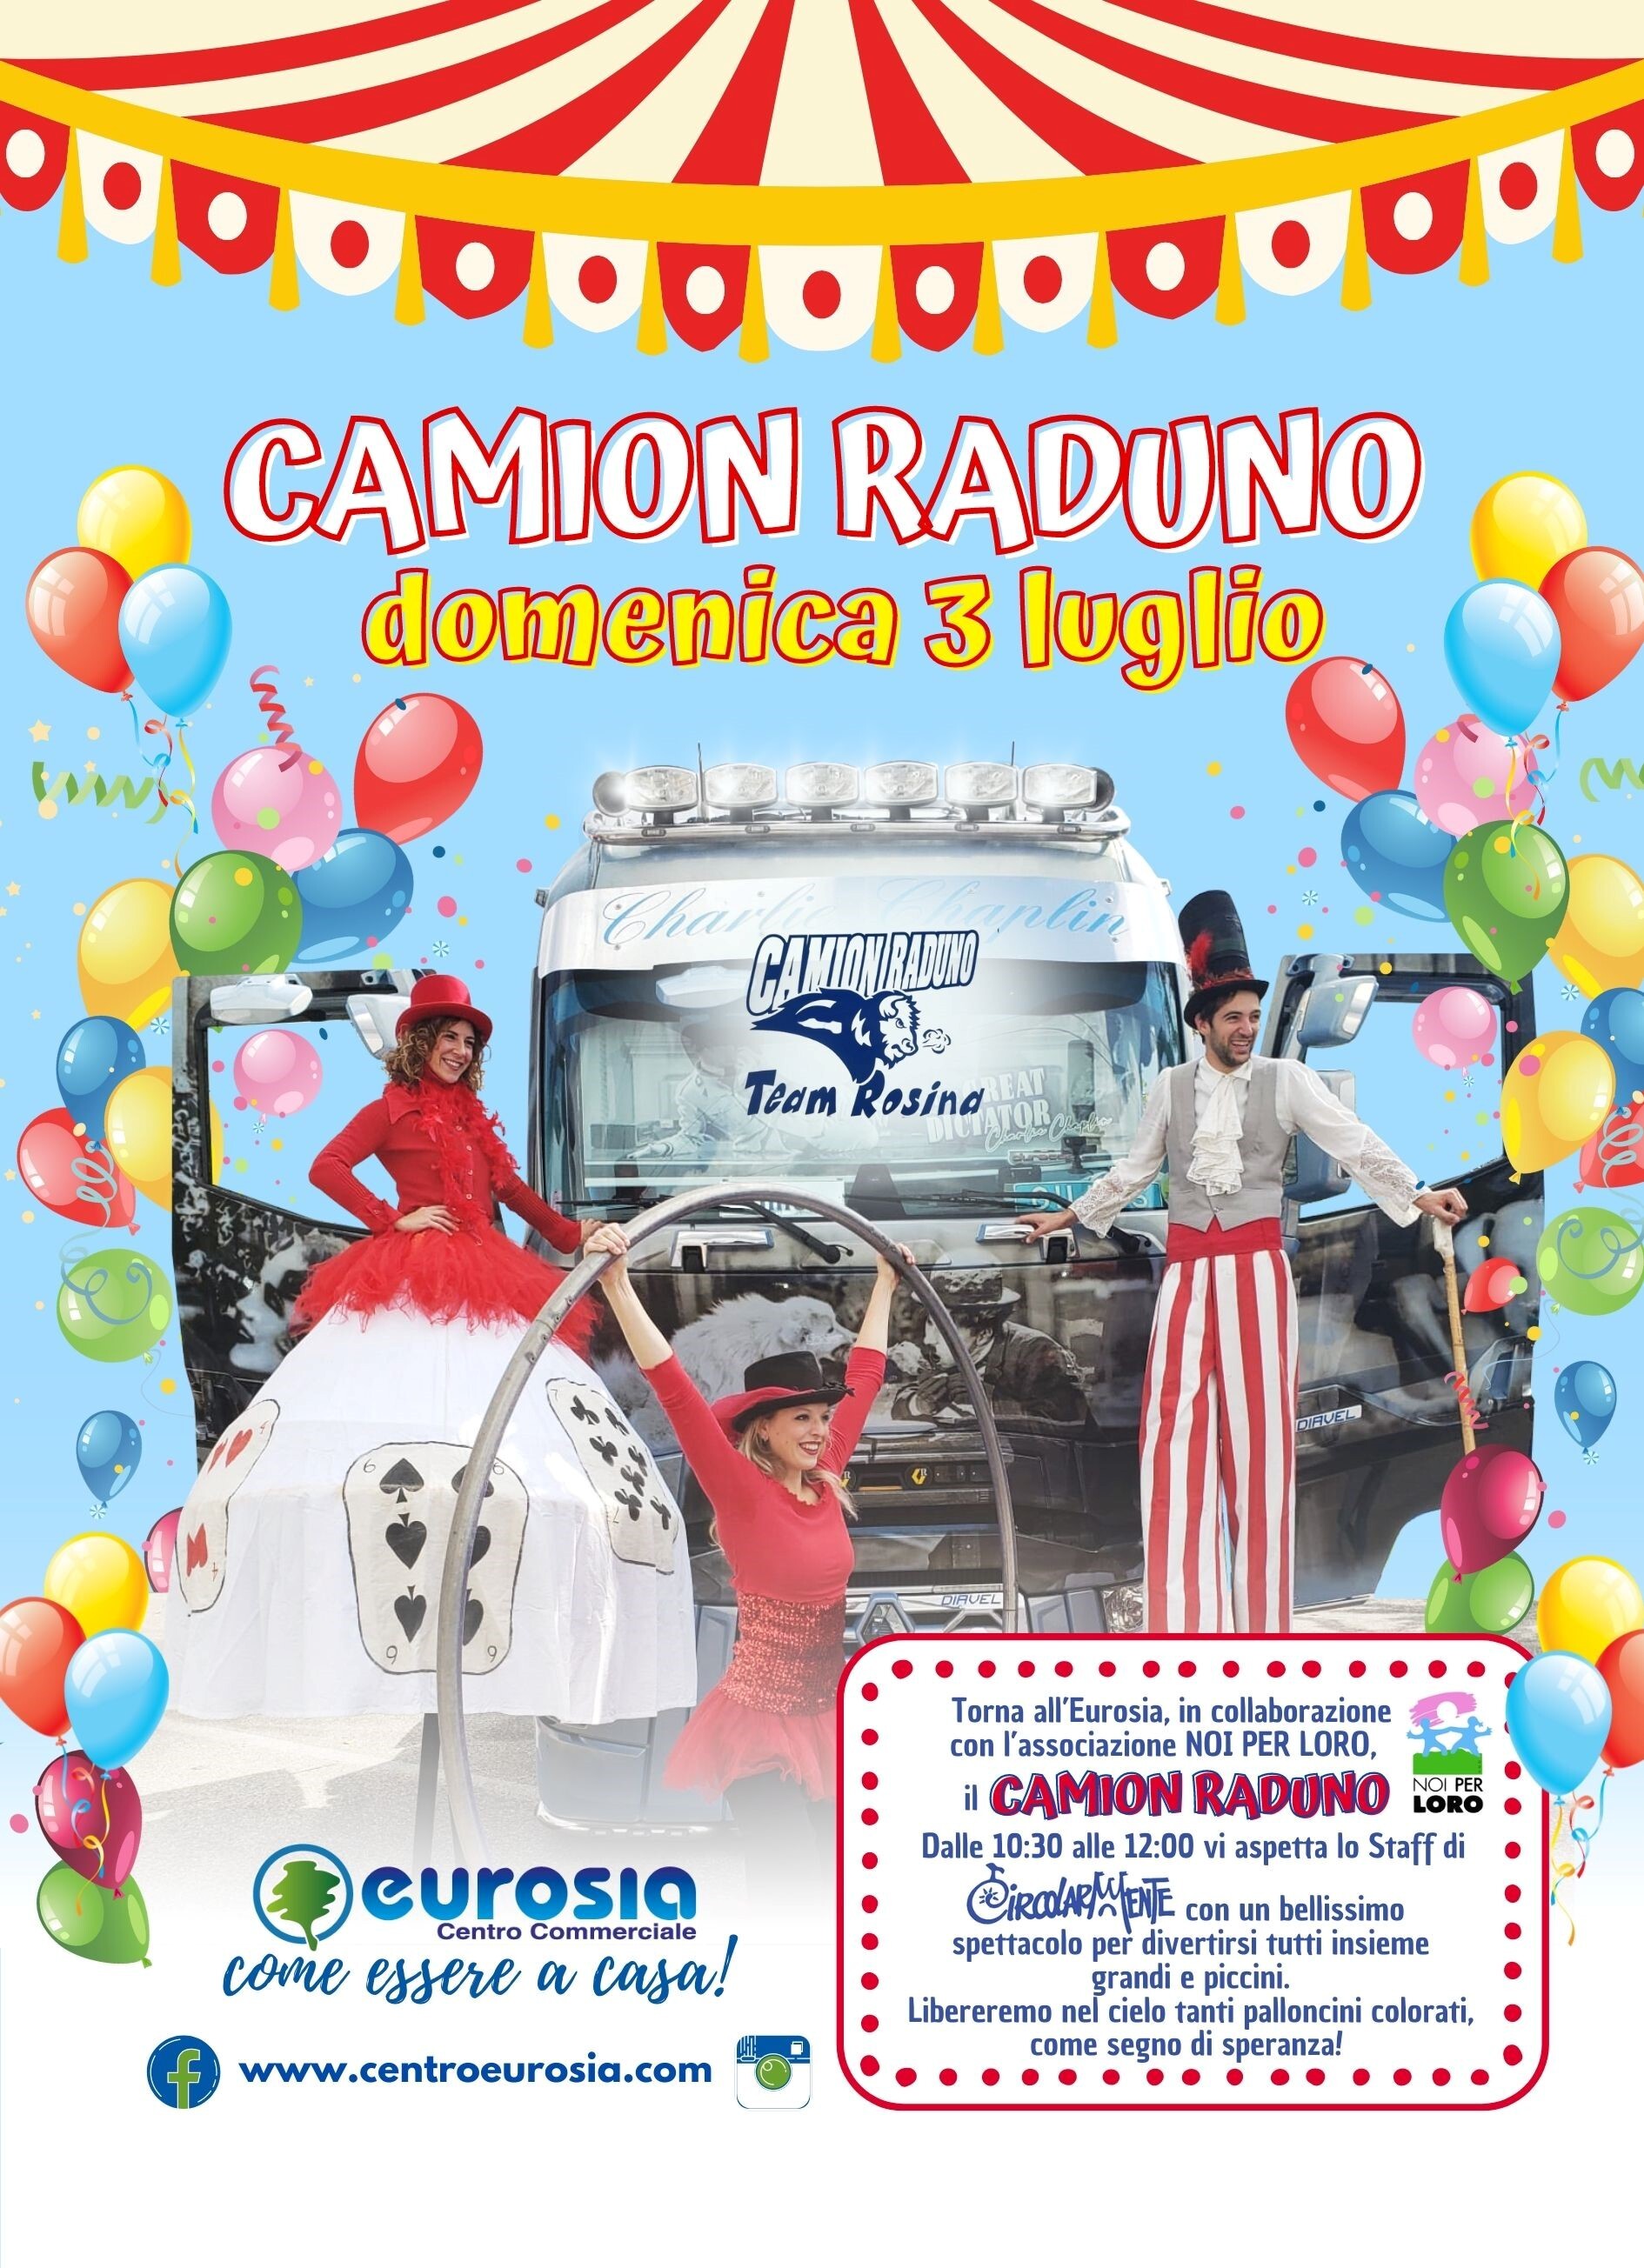 CHARITY EVENT DEL 3 LUGLIO, DEDICATO AI BAMBINI MALATI DI CANCRO, INTITOLATO "CAMION RADUNO".